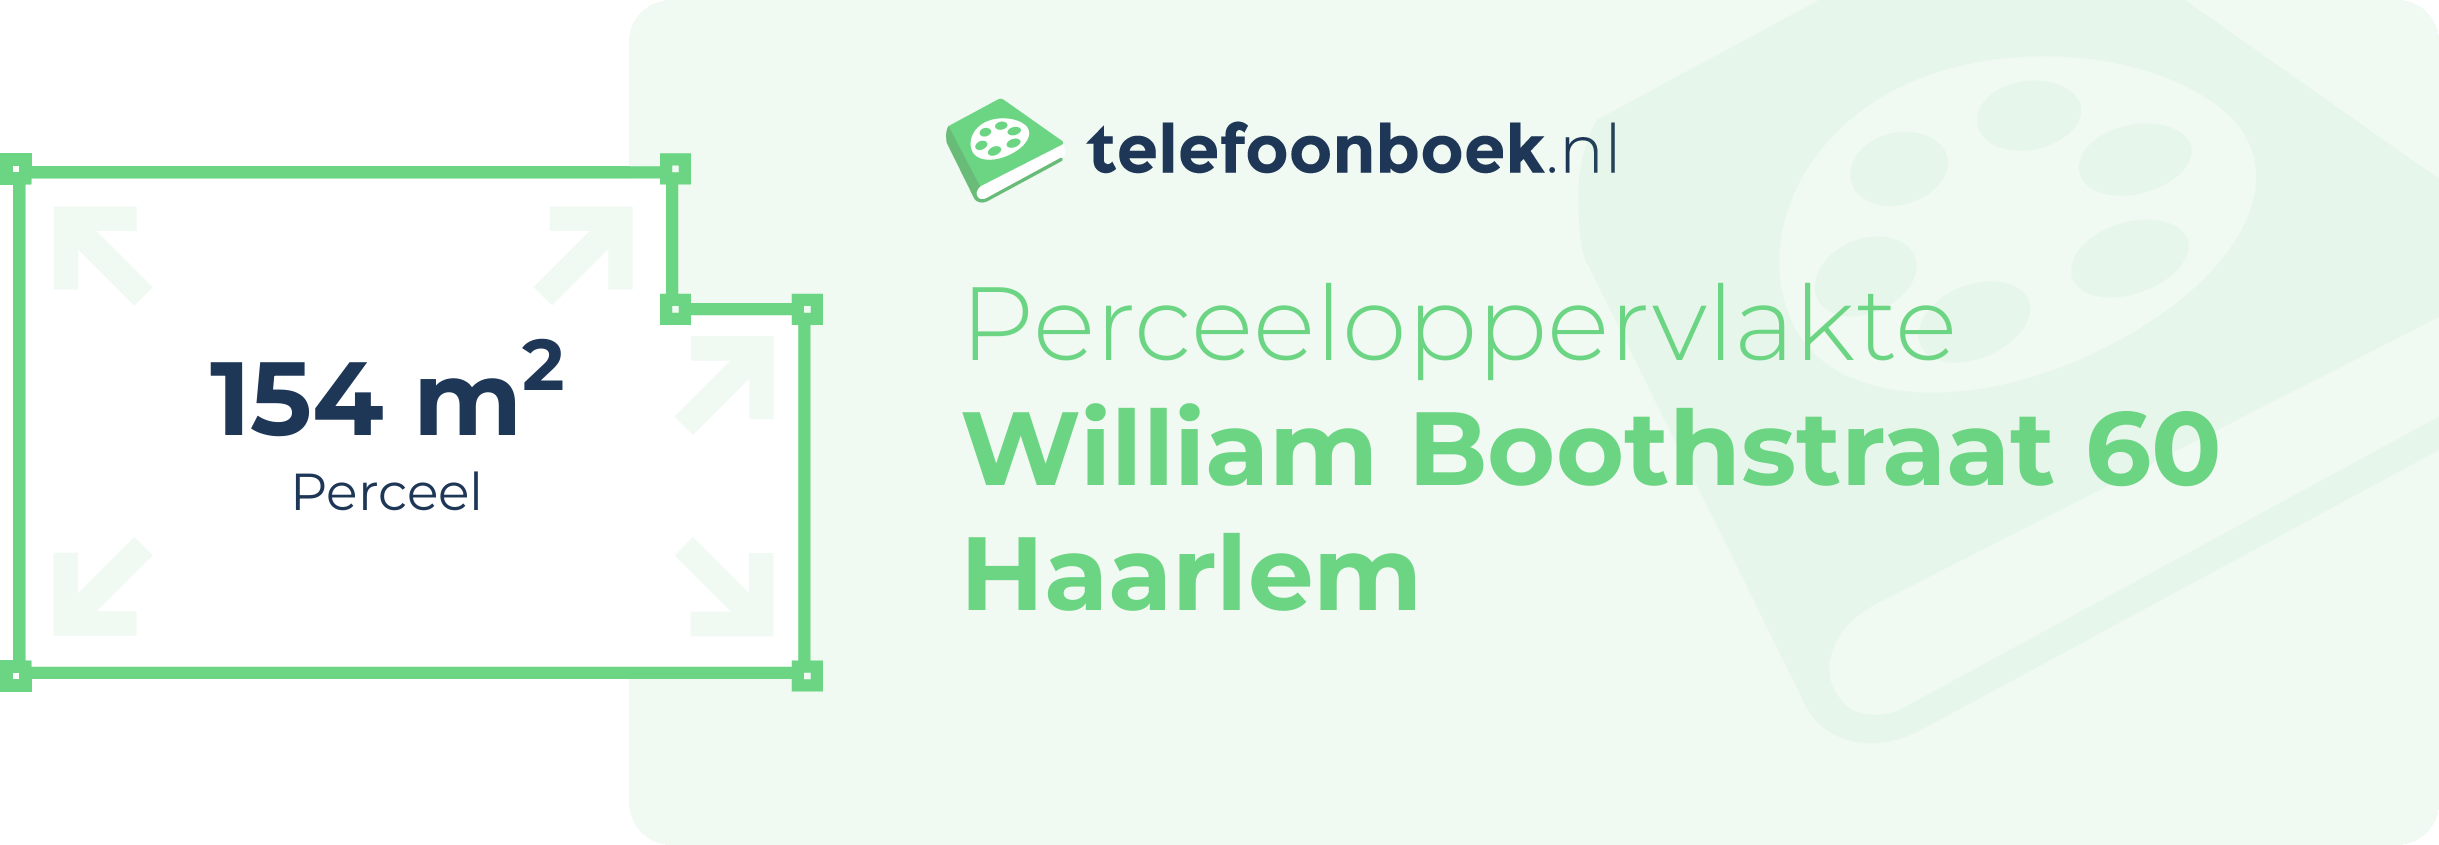 Perceeloppervlakte William Boothstraat 60 Haarlem